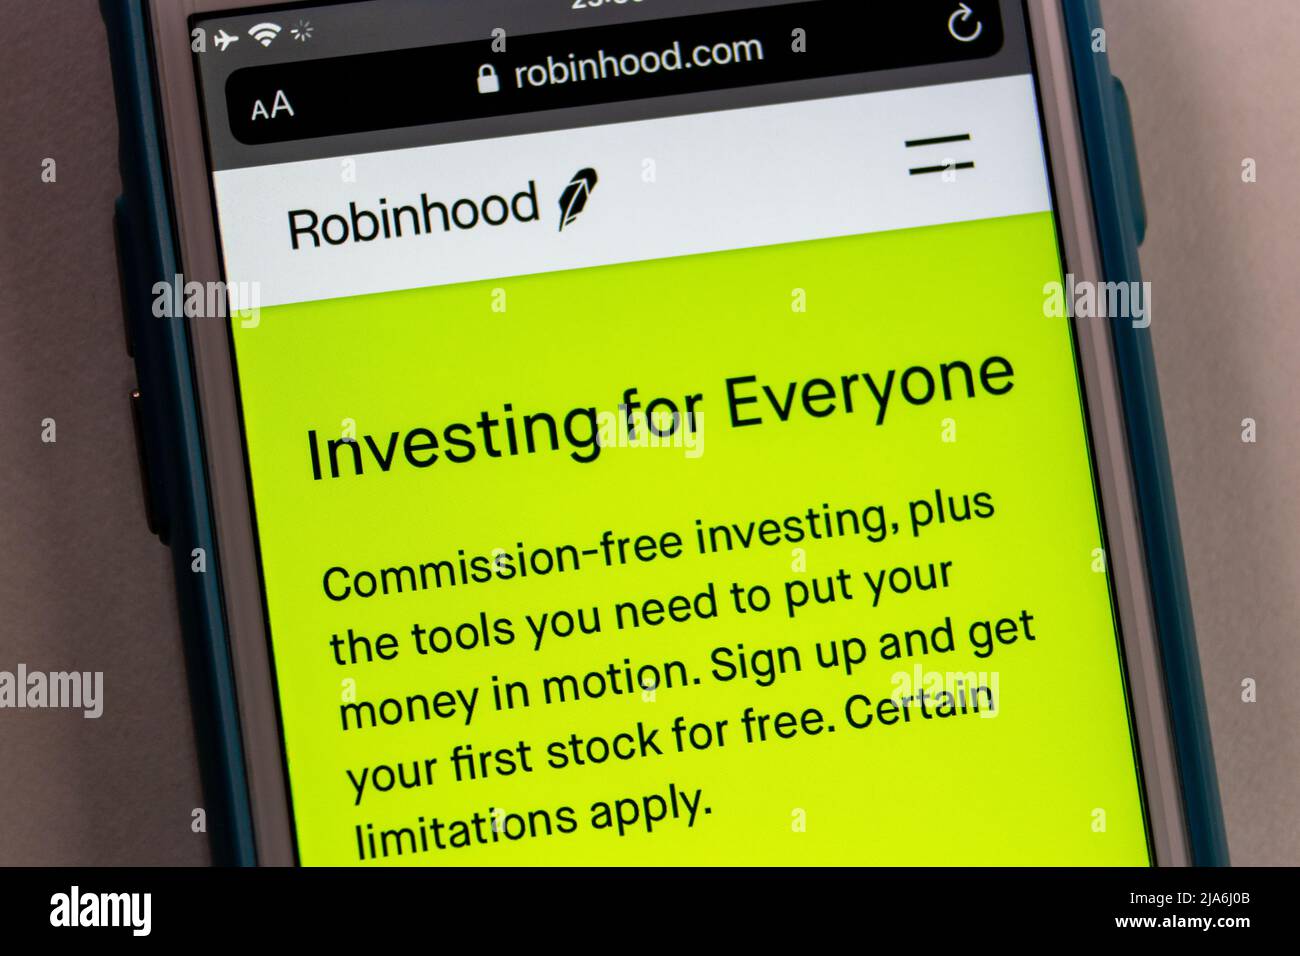 Kumamoto, JAPON - Jan 31 2021 : Robinhood website, société de services financiers américaine connue pour offrir des transactions de stocks et des fonds négociés en bourse, sur iPhone Banque D'Images